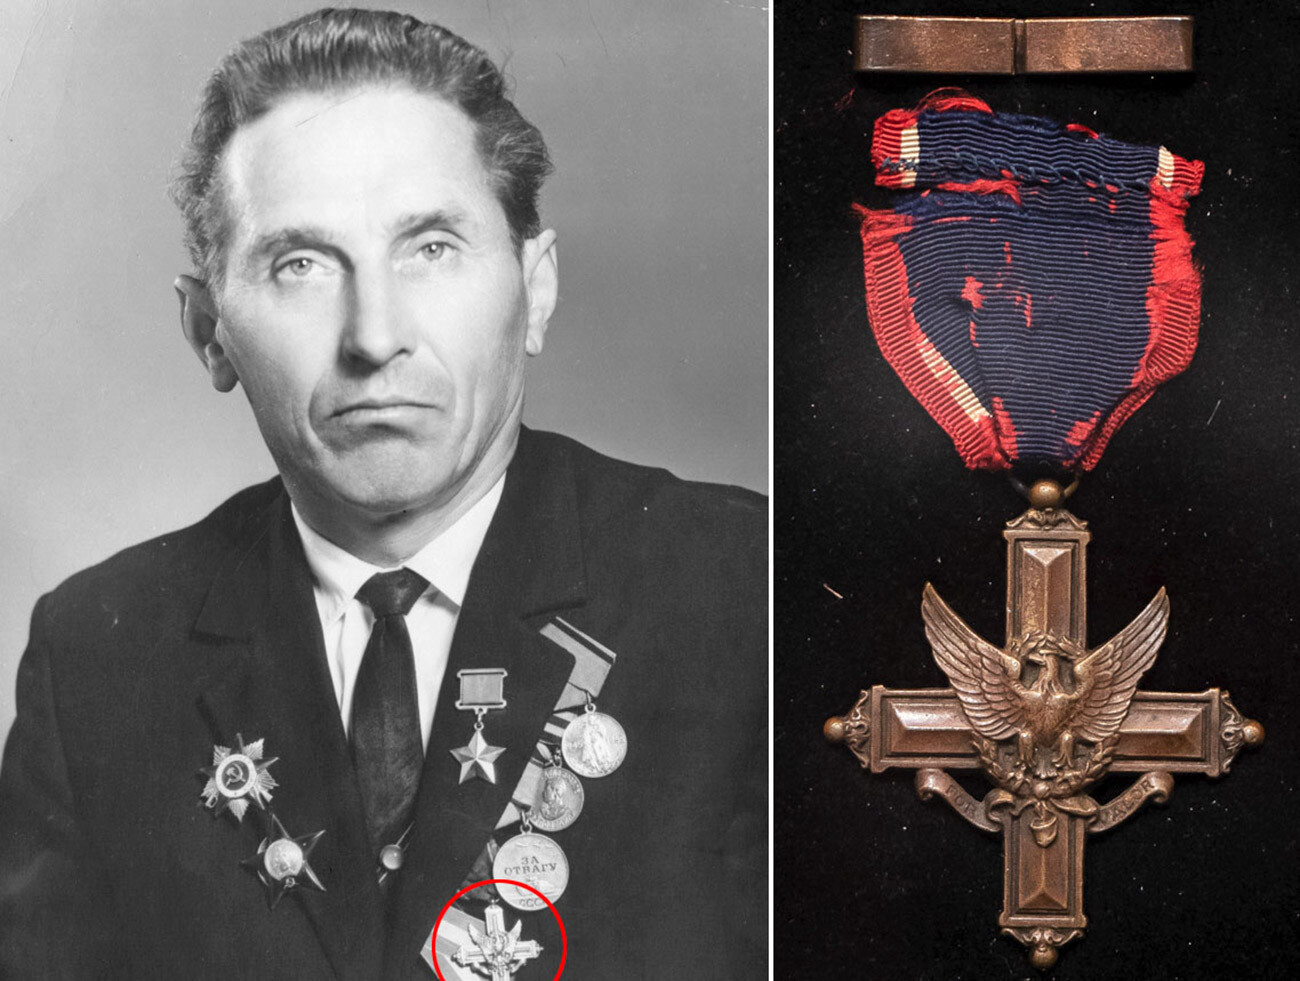 Слева: Герой Советского Союза Федор Леонтьевич Трофимов. Справа: Крест «За выдающиеся заслуги».